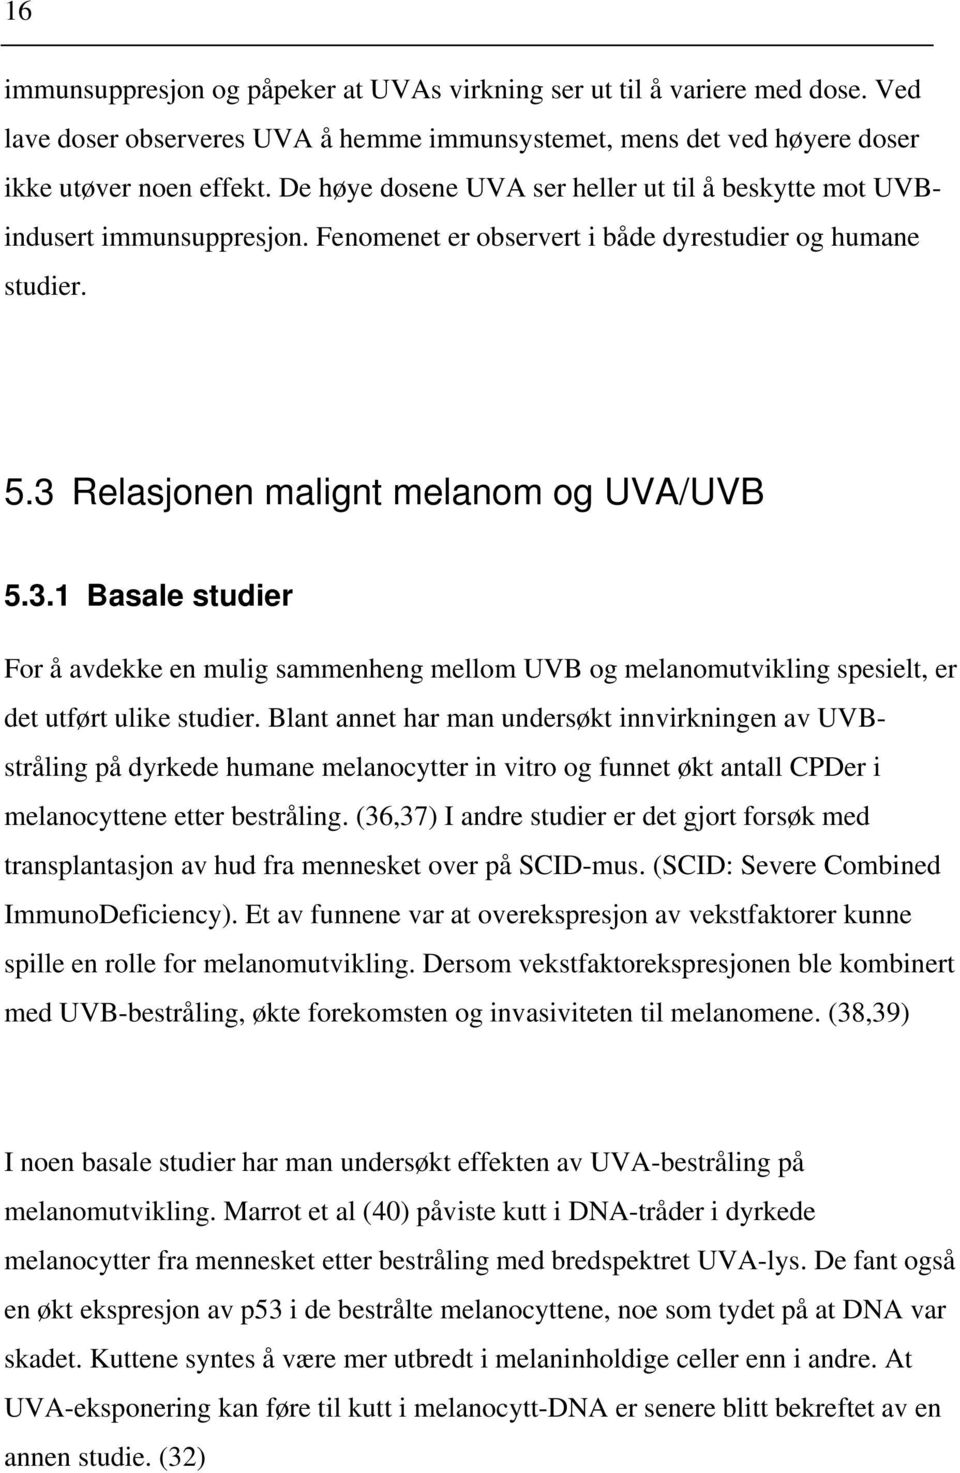 Relasjonen malignt melanom og UVA/UVB 5.3.1 Basale studier For å avdekke en mulig sammenheng mellom UVB og melanomutvikling spesielt, er det utført ulike studier.